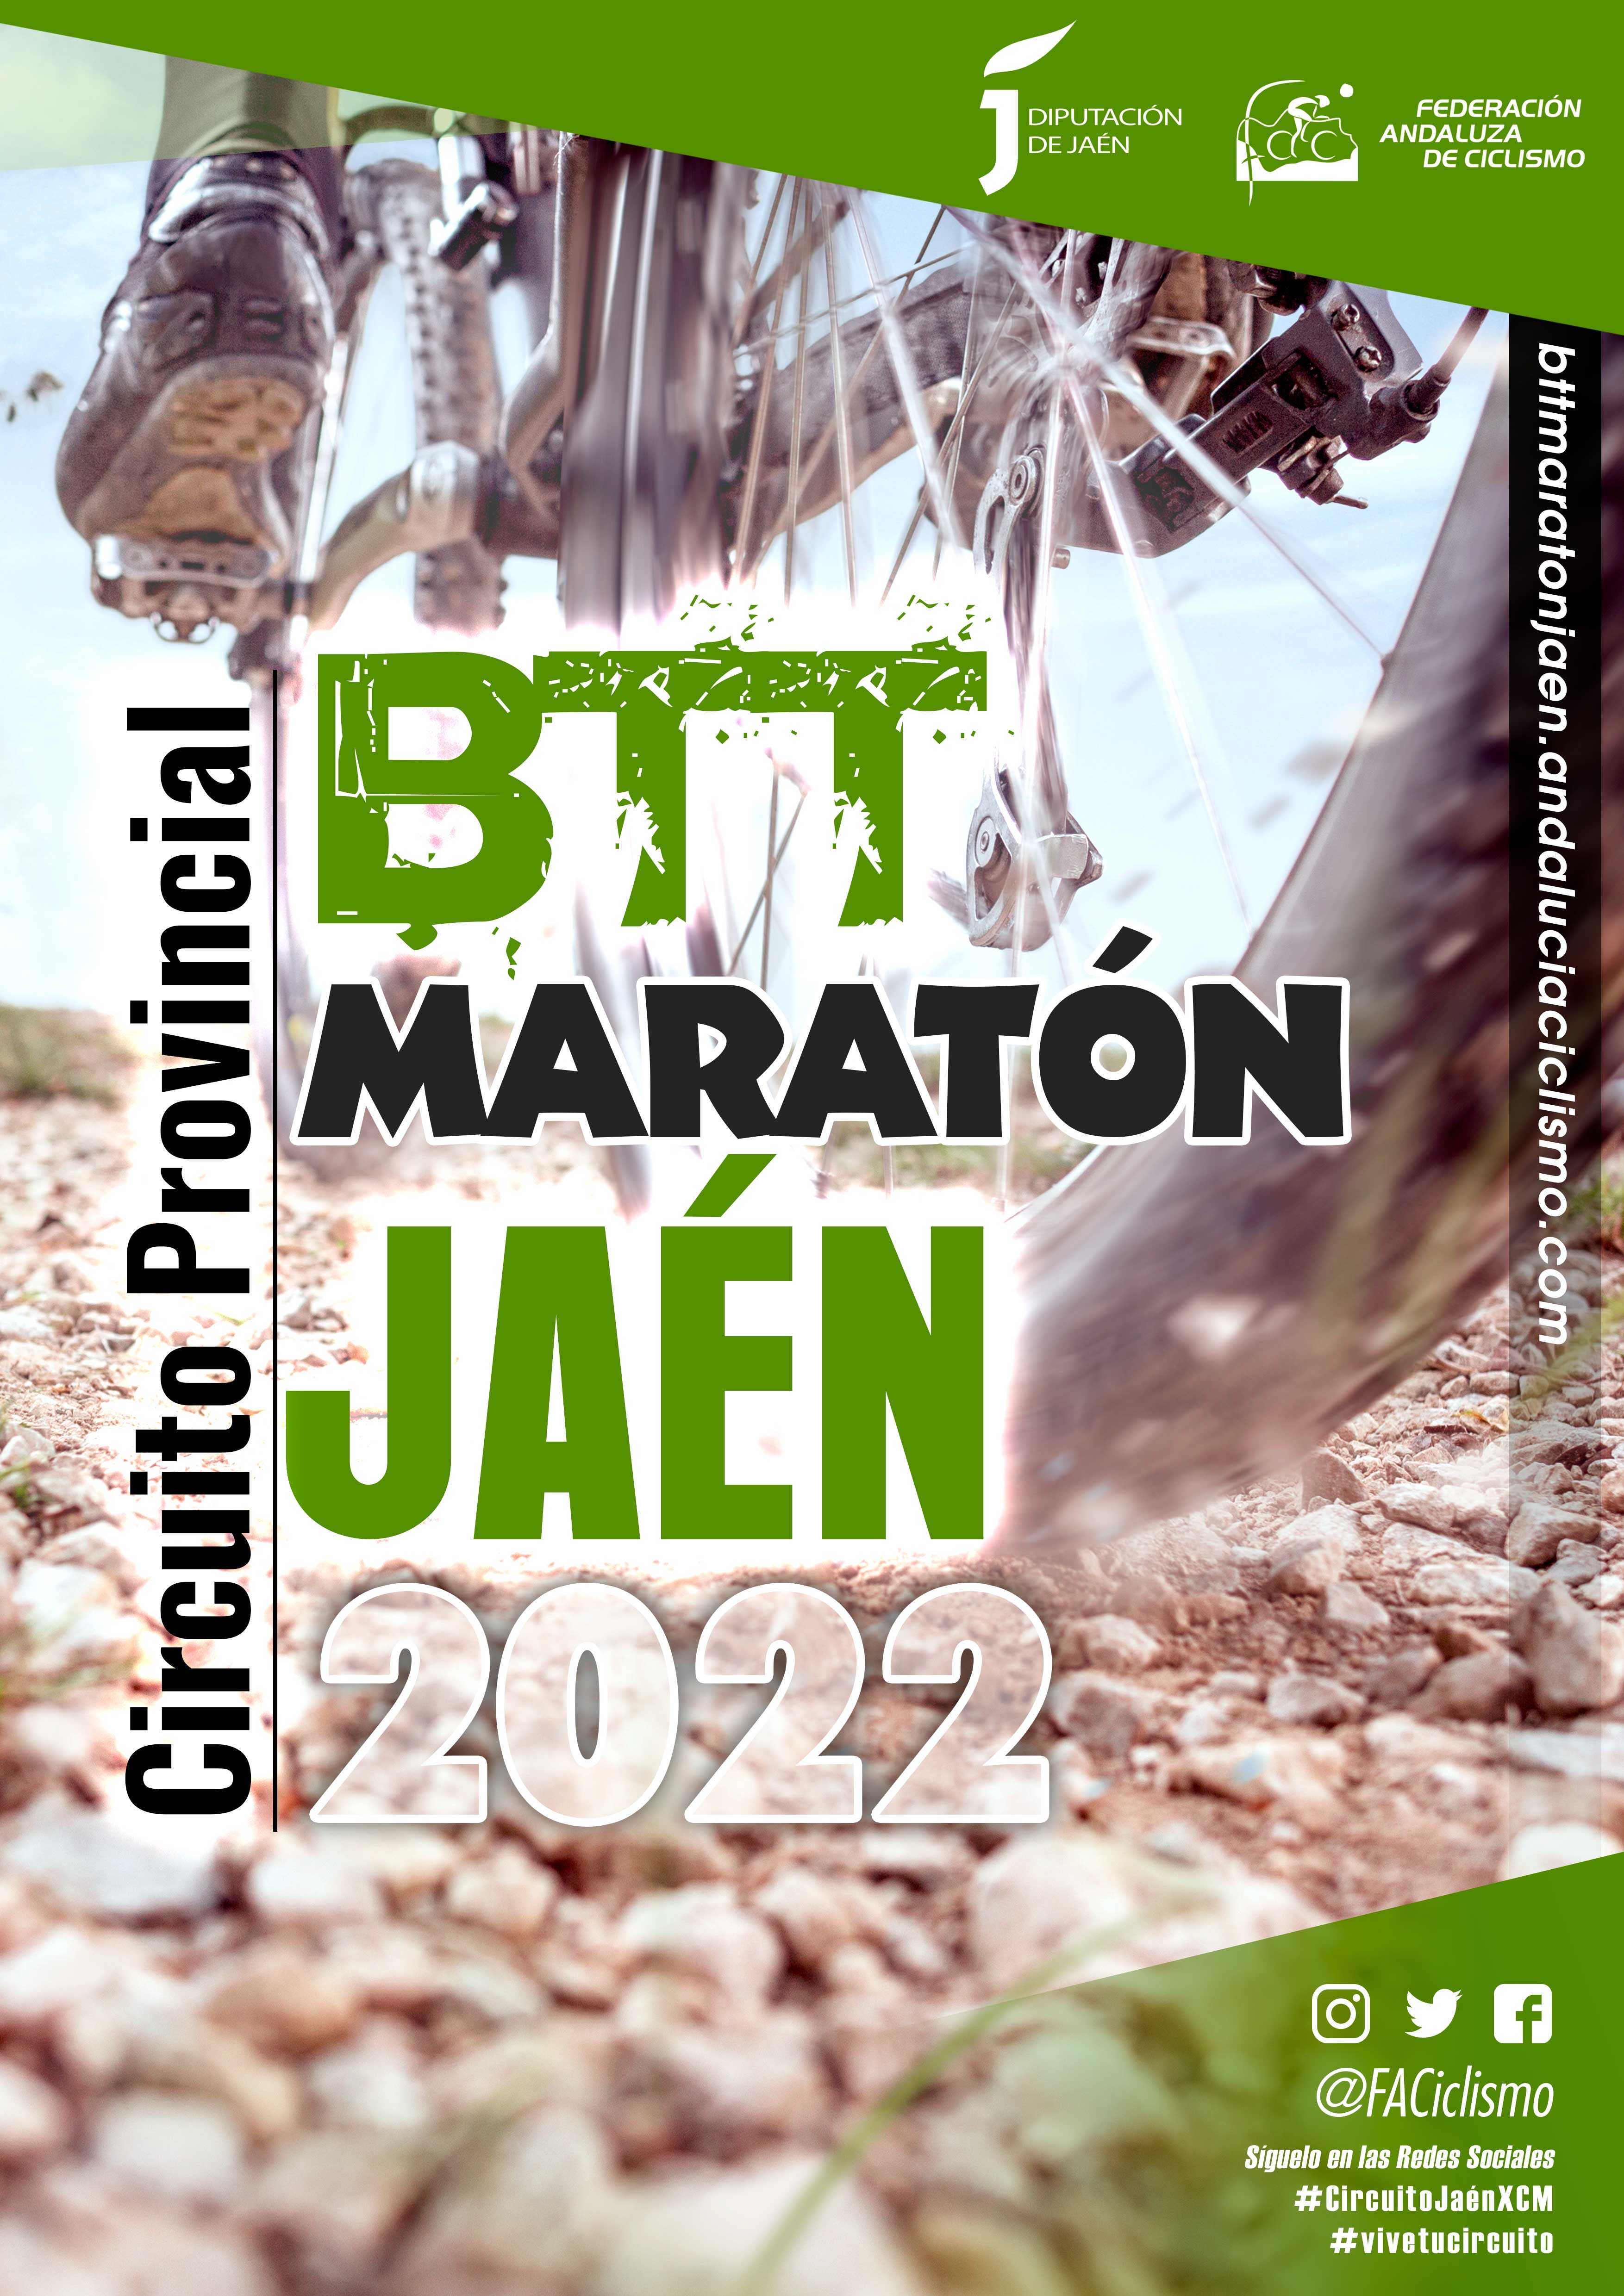 Ganadores del Circuito Provincial de Jaén BTT Maratón 2022